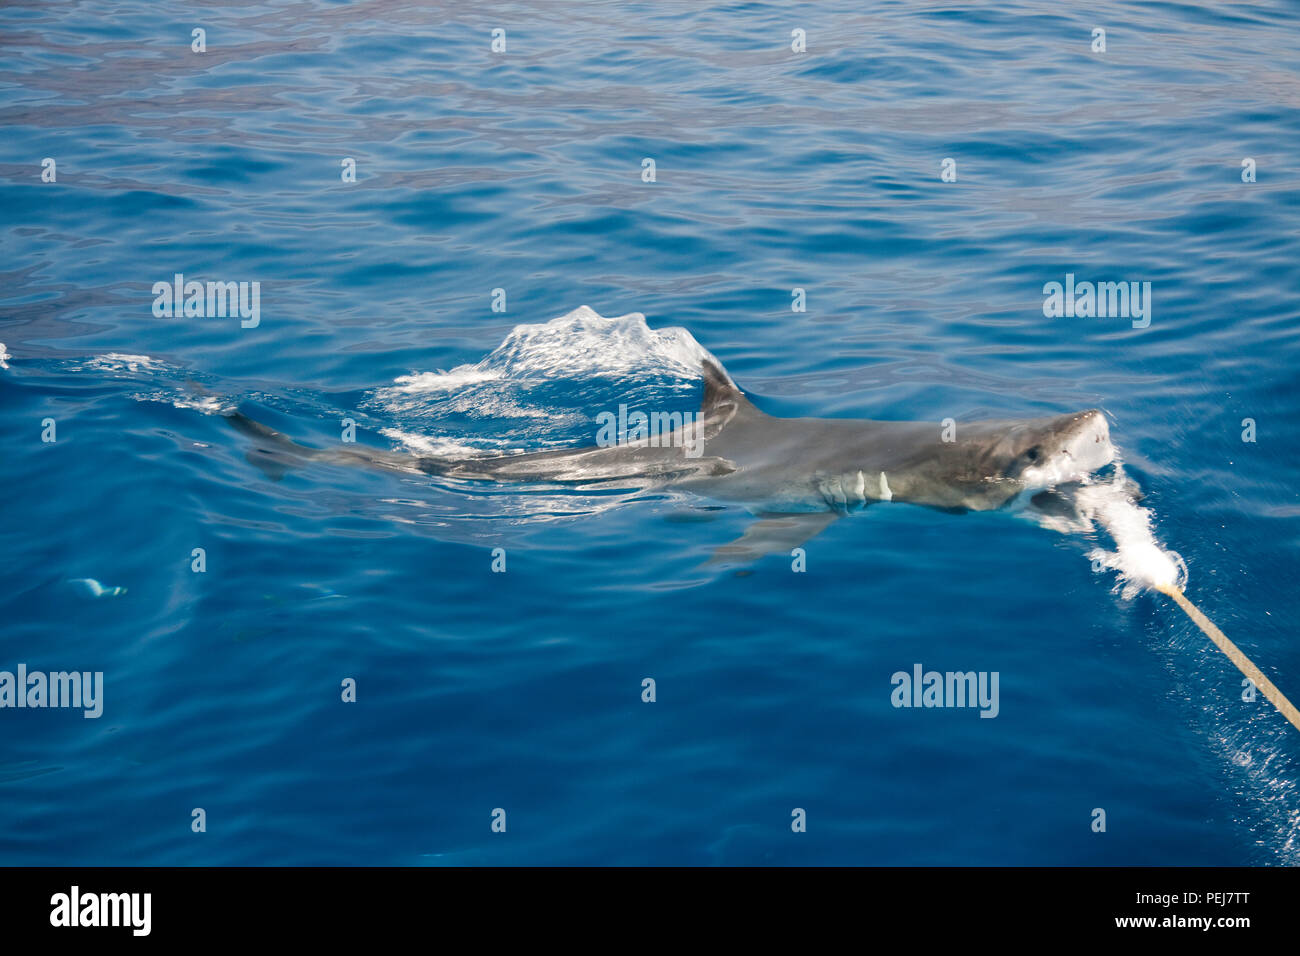 Ce grand requin blanc, Carcharodon carcharias, s'accélère à mordre un appât au bout d'une corde sous la surface au large de l'île de Guadalupe, Mexique Banque D'Images